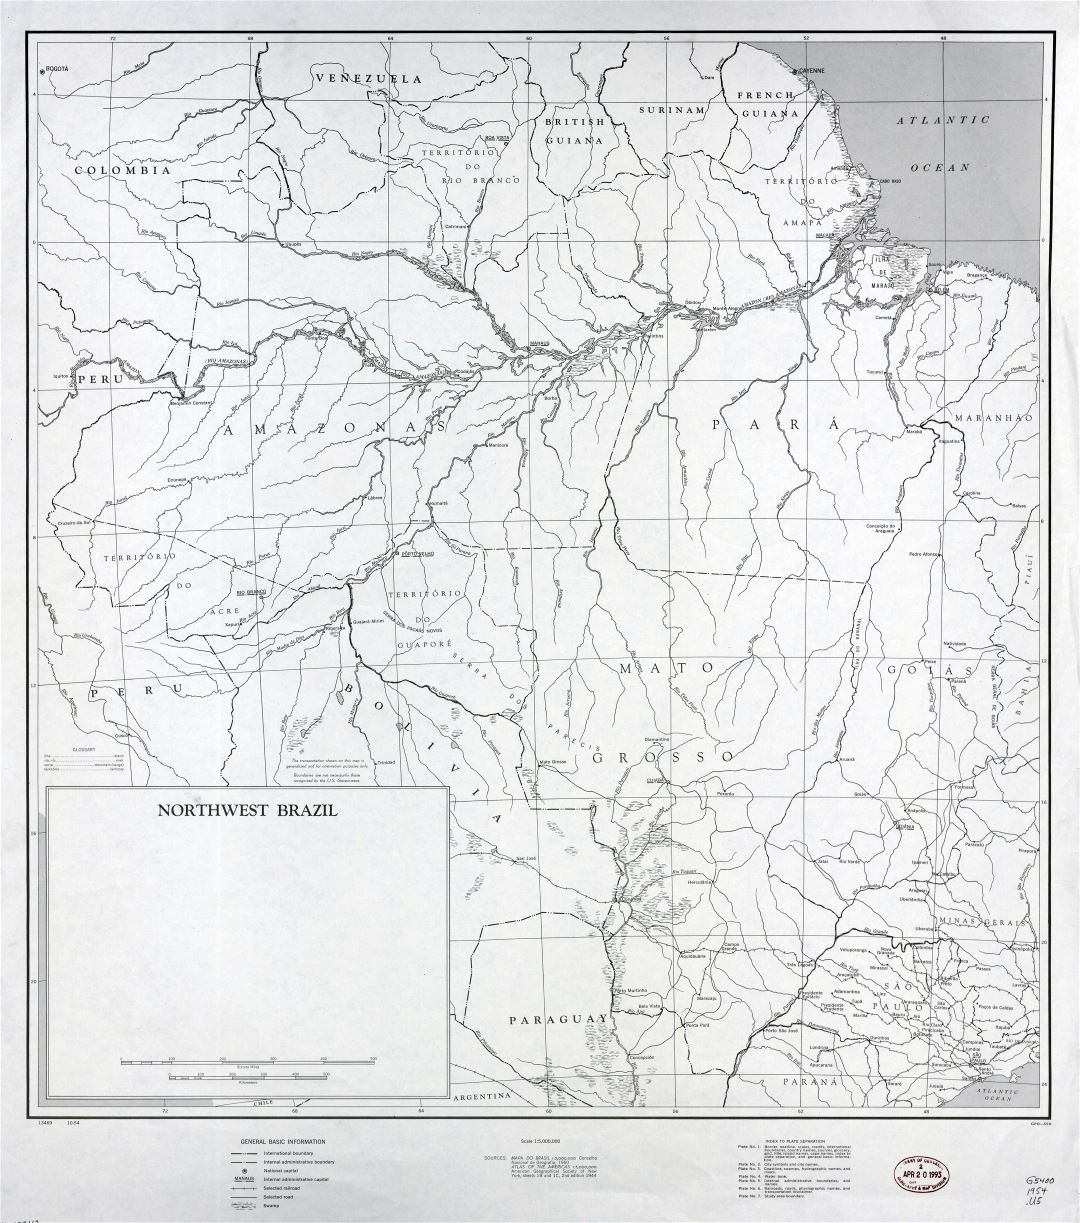 Grande detallado mapa del Noroeste de Brasil con otras marcas - 1954